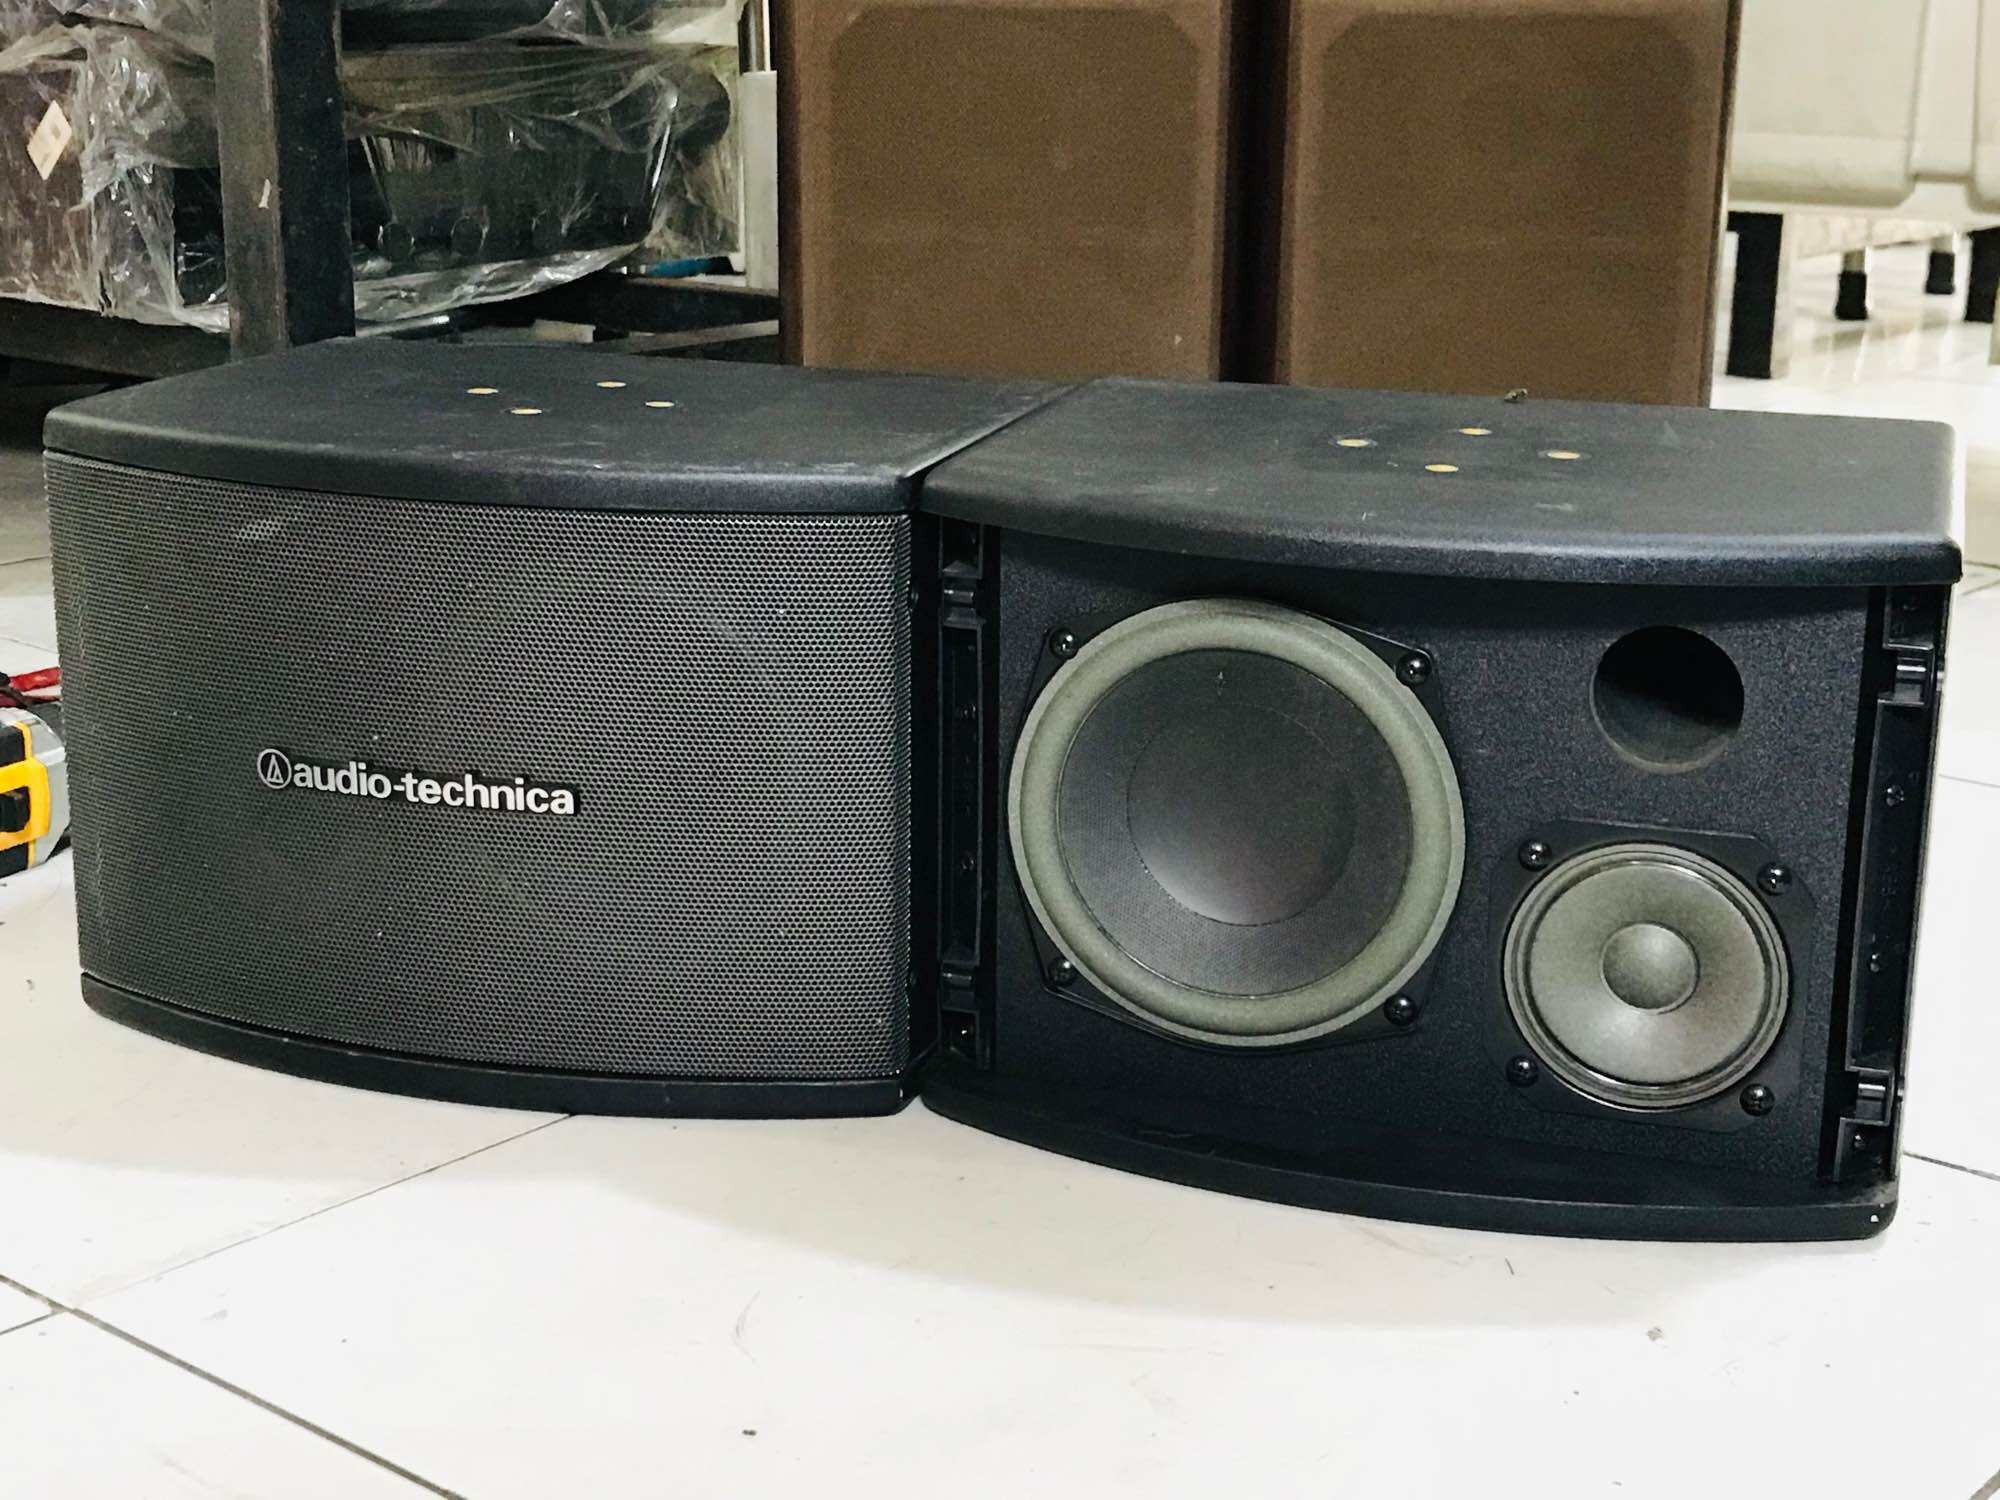 Freeship Cặp Loa Audio-technica AT-KSP52  công xuất 260w/1cặp Loa chuyên nghe nhạc và kết hợp hát karaoke cực kỳ hay.